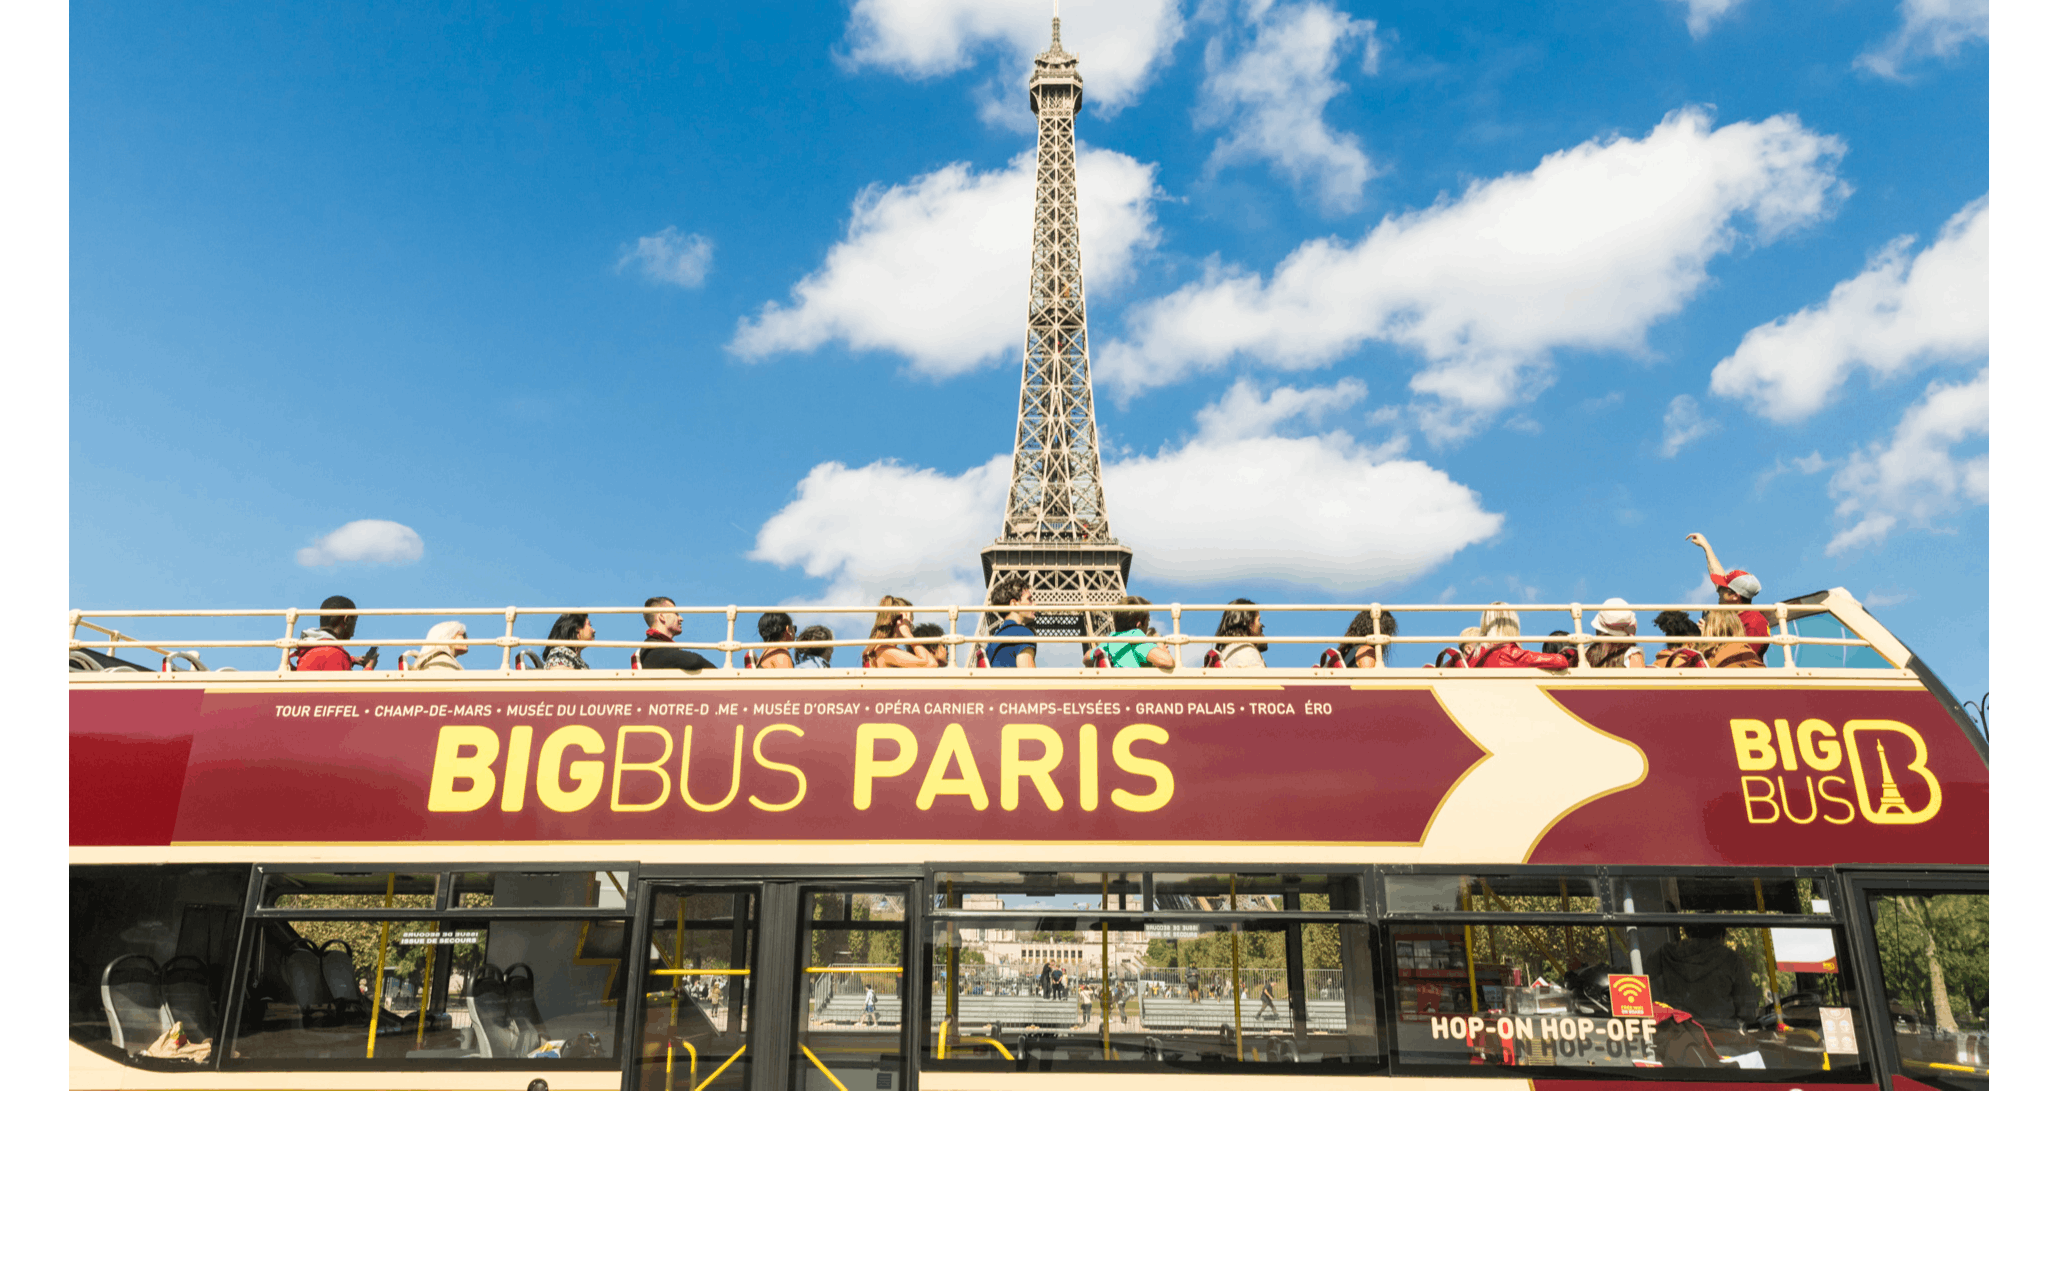 48-godzinna wycieczka autobusem po Paryżu z możliwością wsiadania i wysiadania z panoramicznym rejsem po rzece